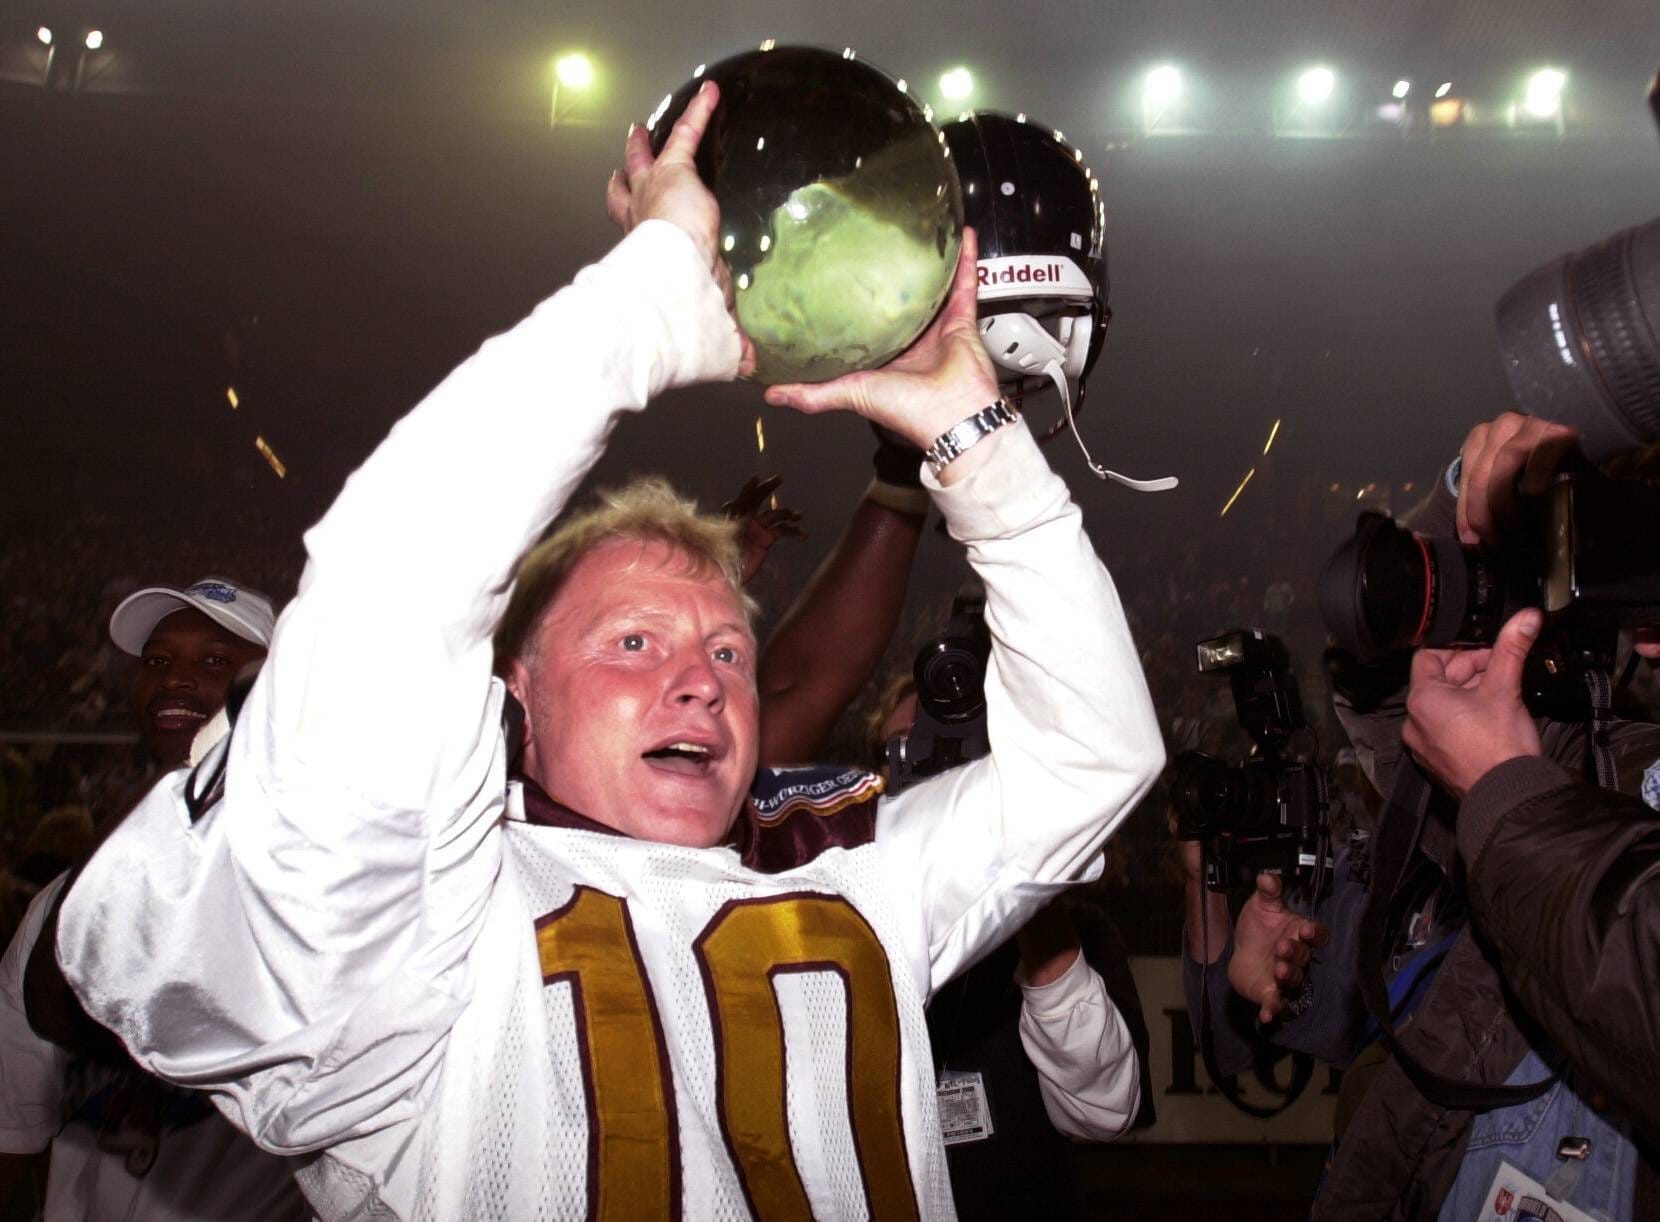 ... verbuchte Burgsmüller bemerkenswerte Erfolge: 1998 und 2000 gewann er mit den Rheinländern den World Bowl der NFL Europe, dem damaligen Europa-Pendant der bekannten US-Profiliga NFL.